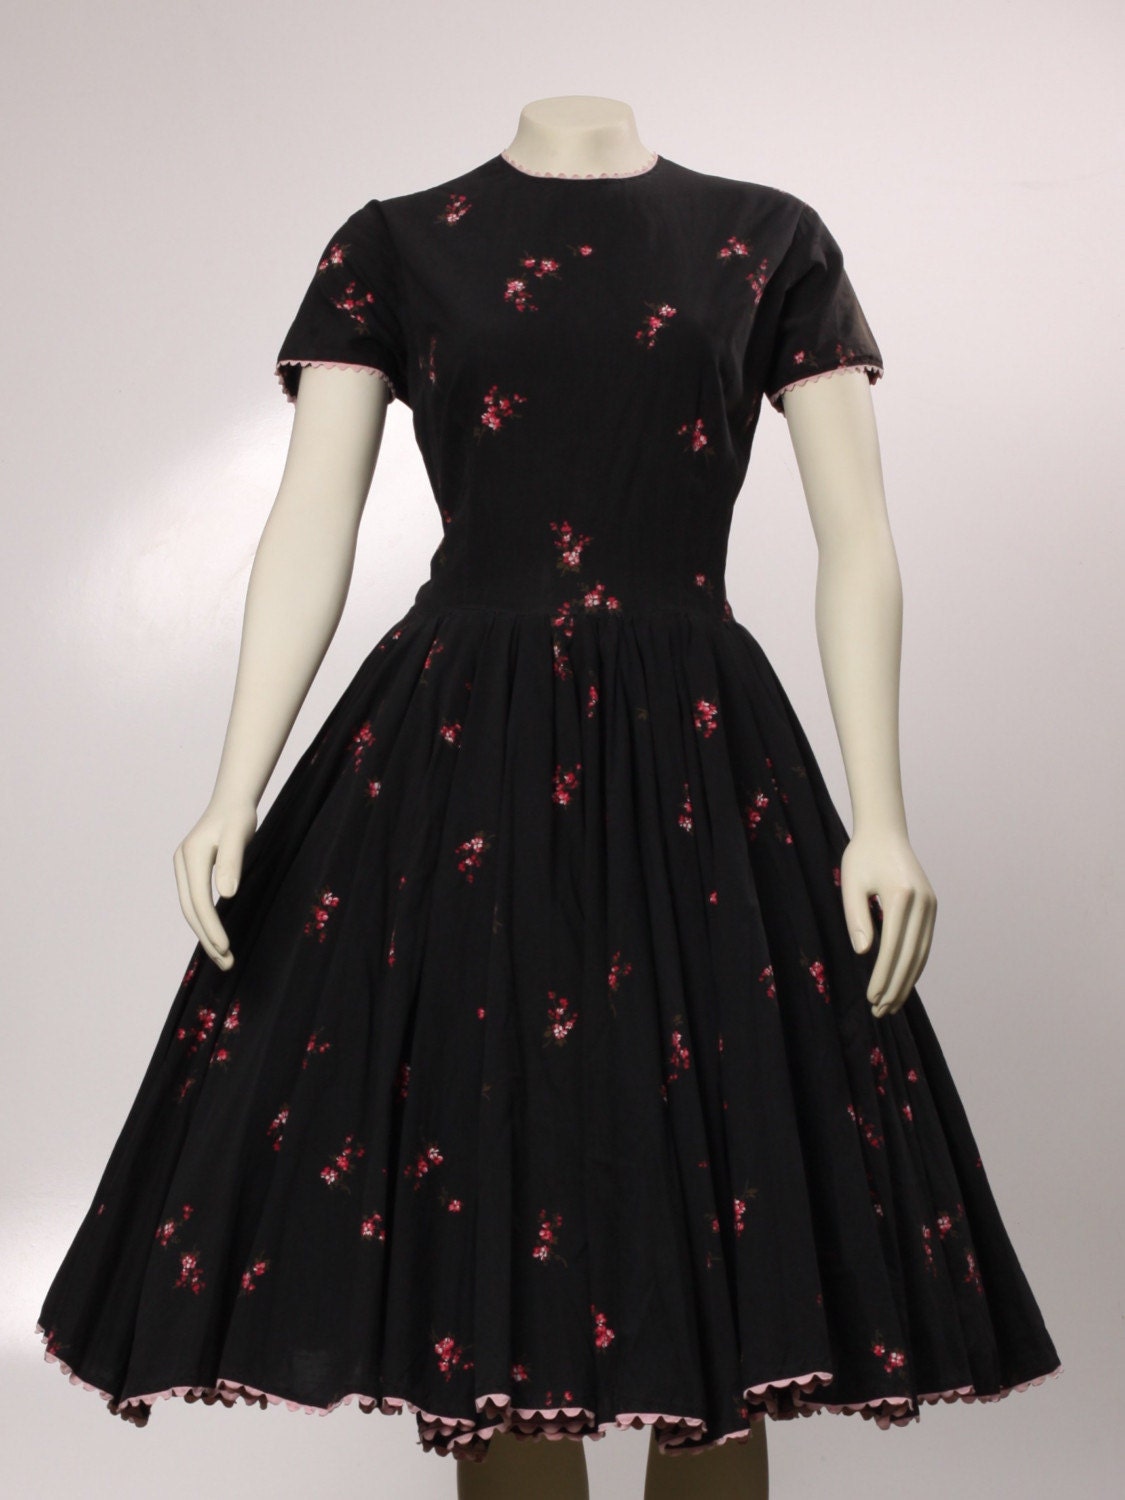 1950s AUTHENTIC VINTAGE Black Full Skirt Dress Full Skirt with